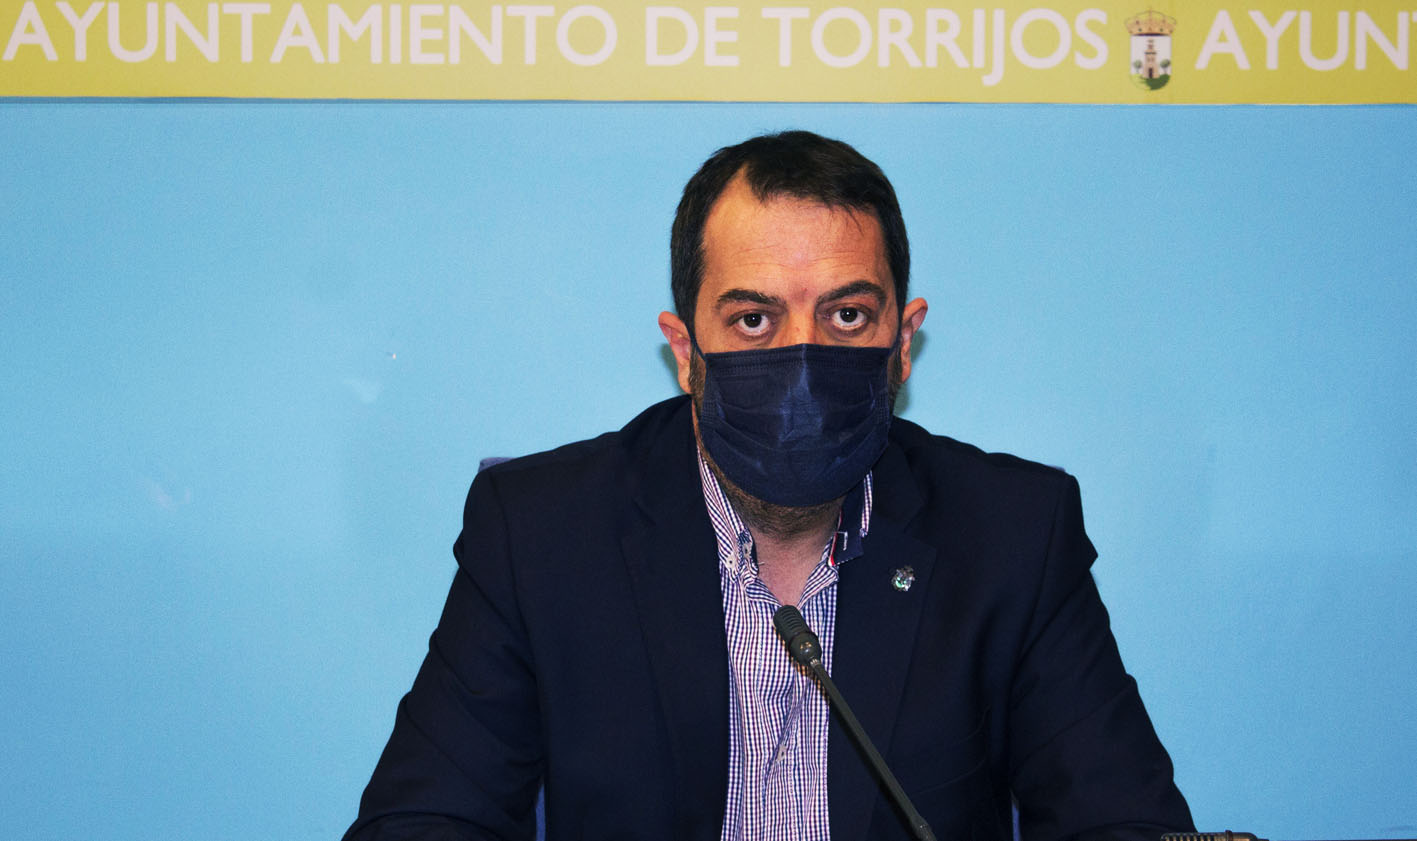 El alcalde de Torrijos apunta al cese del estado de alarma para calmar el requerimiento de los hosteleros